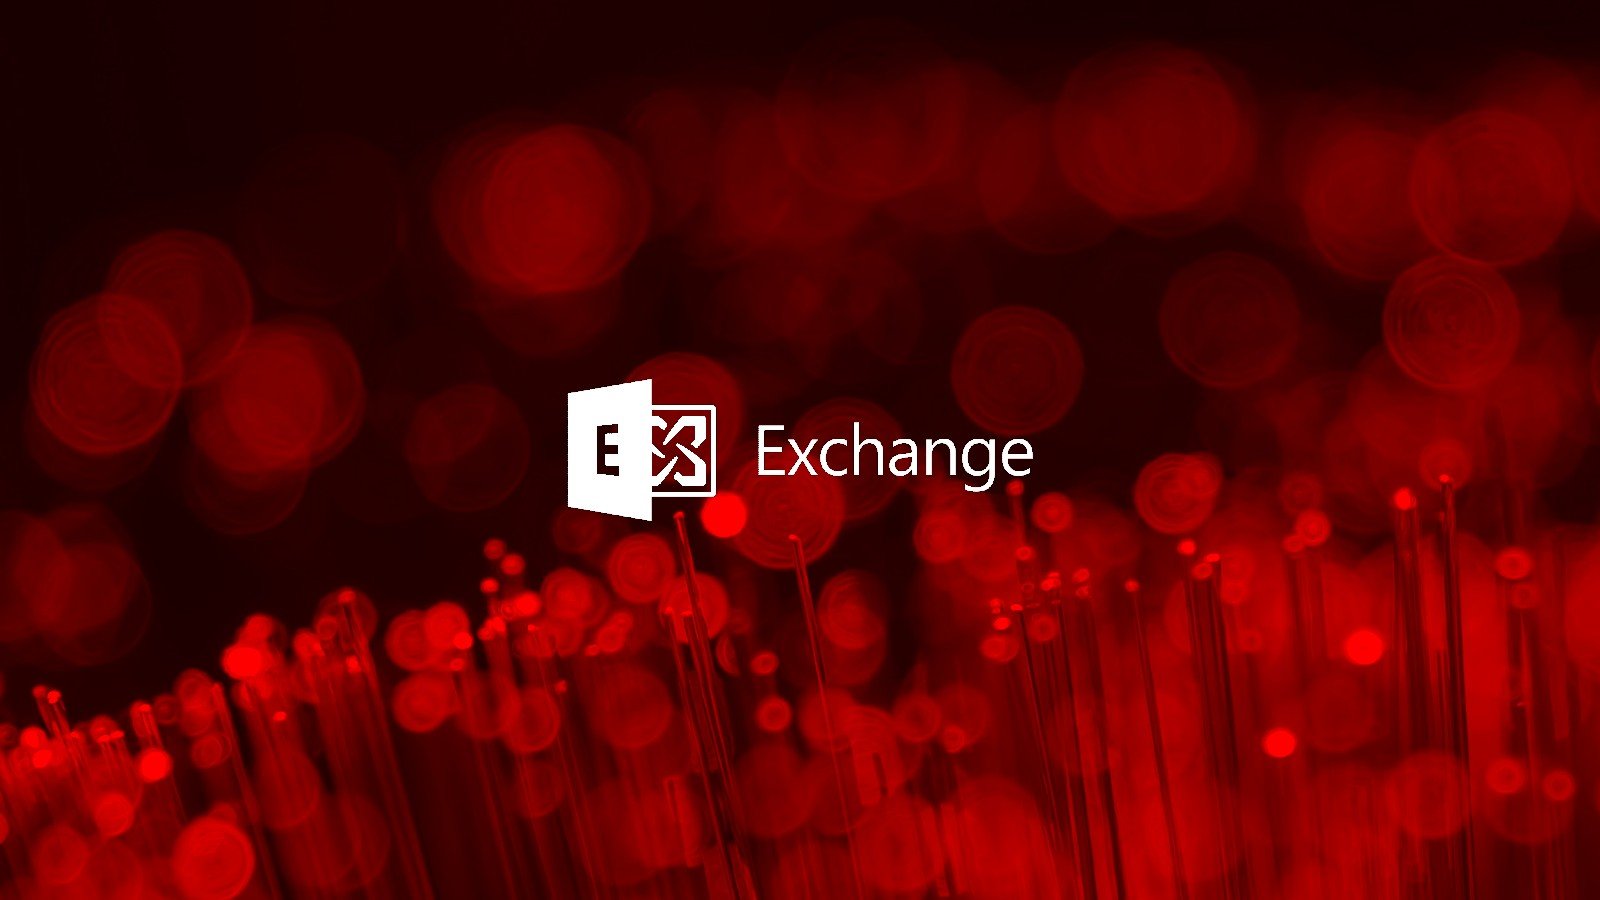 2022 Microsoft phát hành bản vá khẩn cấp cho máy chủ Exchange